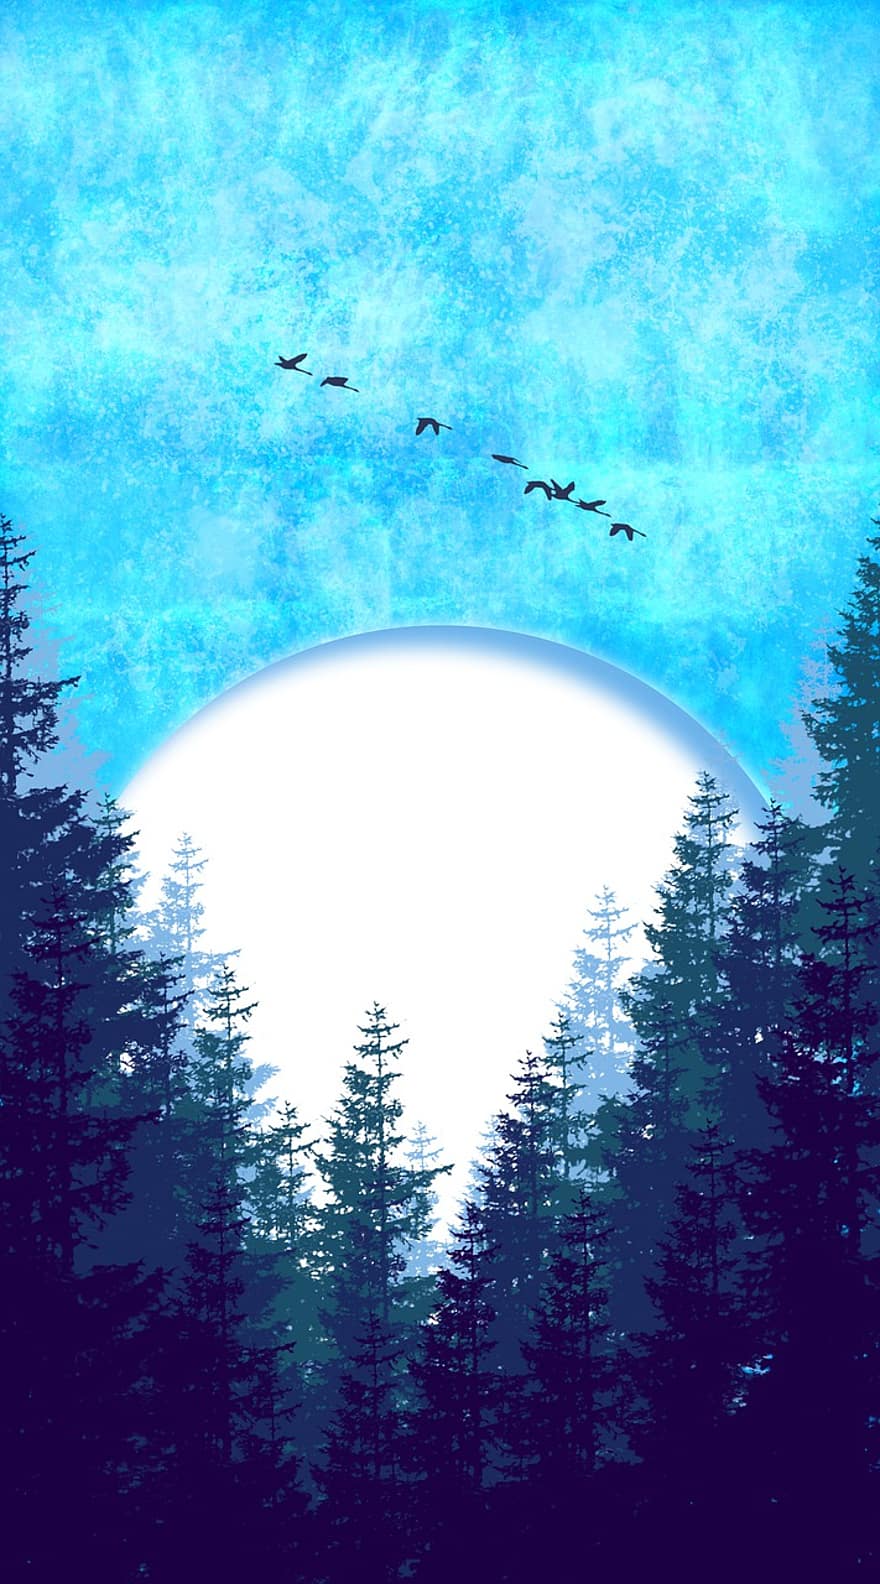 ป่า, ดวงจันทร์, ธรรมชาติ, ต้นไม้, ท้องฟ้า, แสงจันทร์, นก